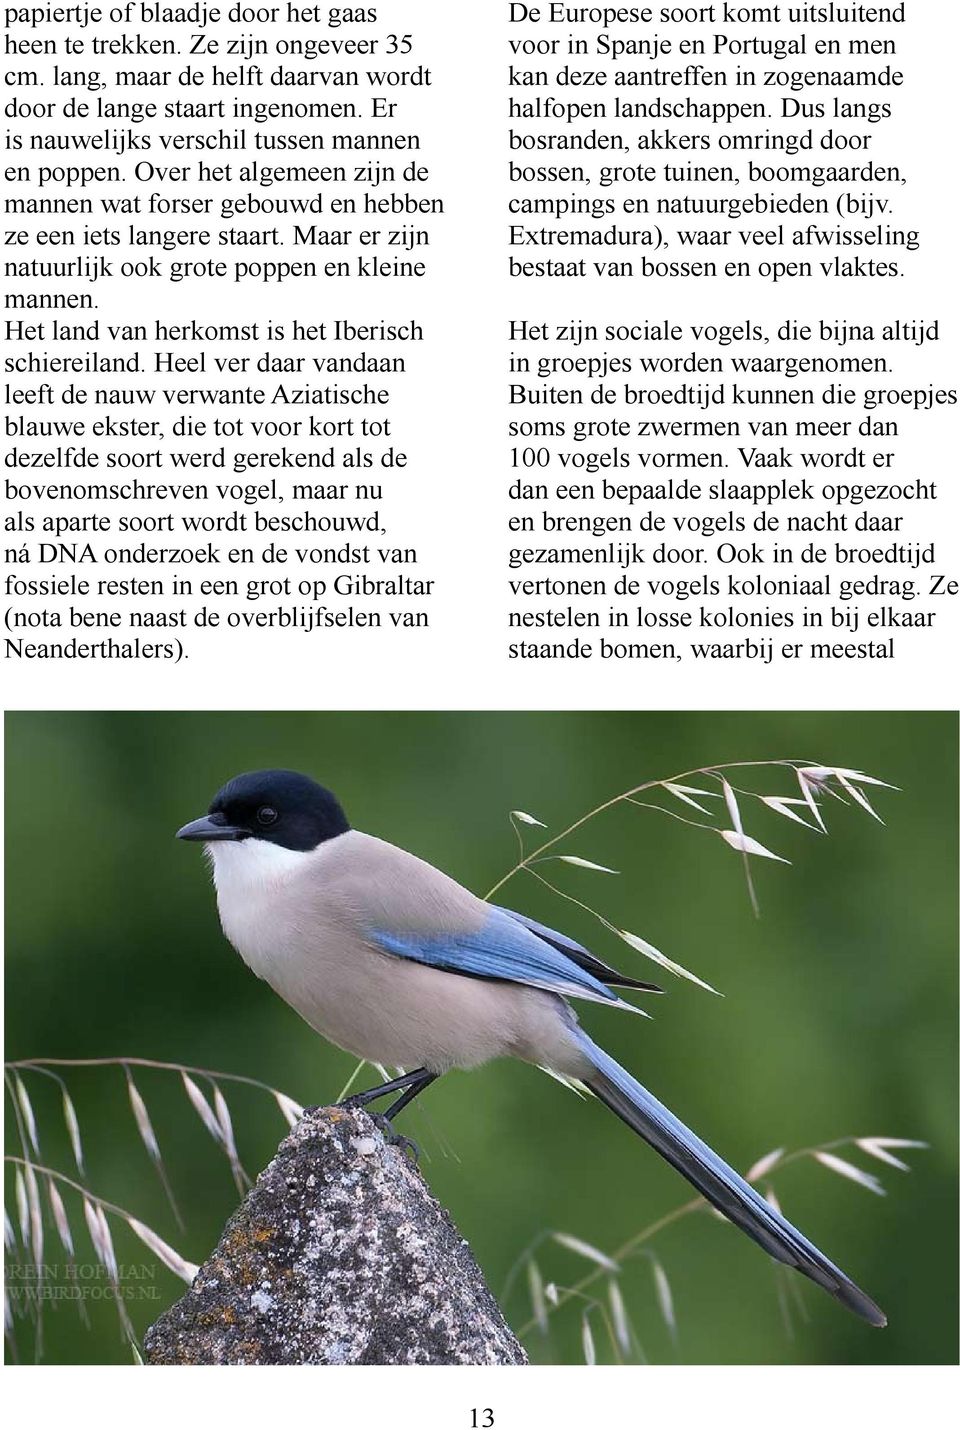 Heel ver daar vandaan leeft de nauw verwante Aziatische blauwe ekster, die tot voor kort tot dezelfde soort werd gerekend als de bovenomschreven vogel, maar nu als aparte soort wordt beschouwd, ná